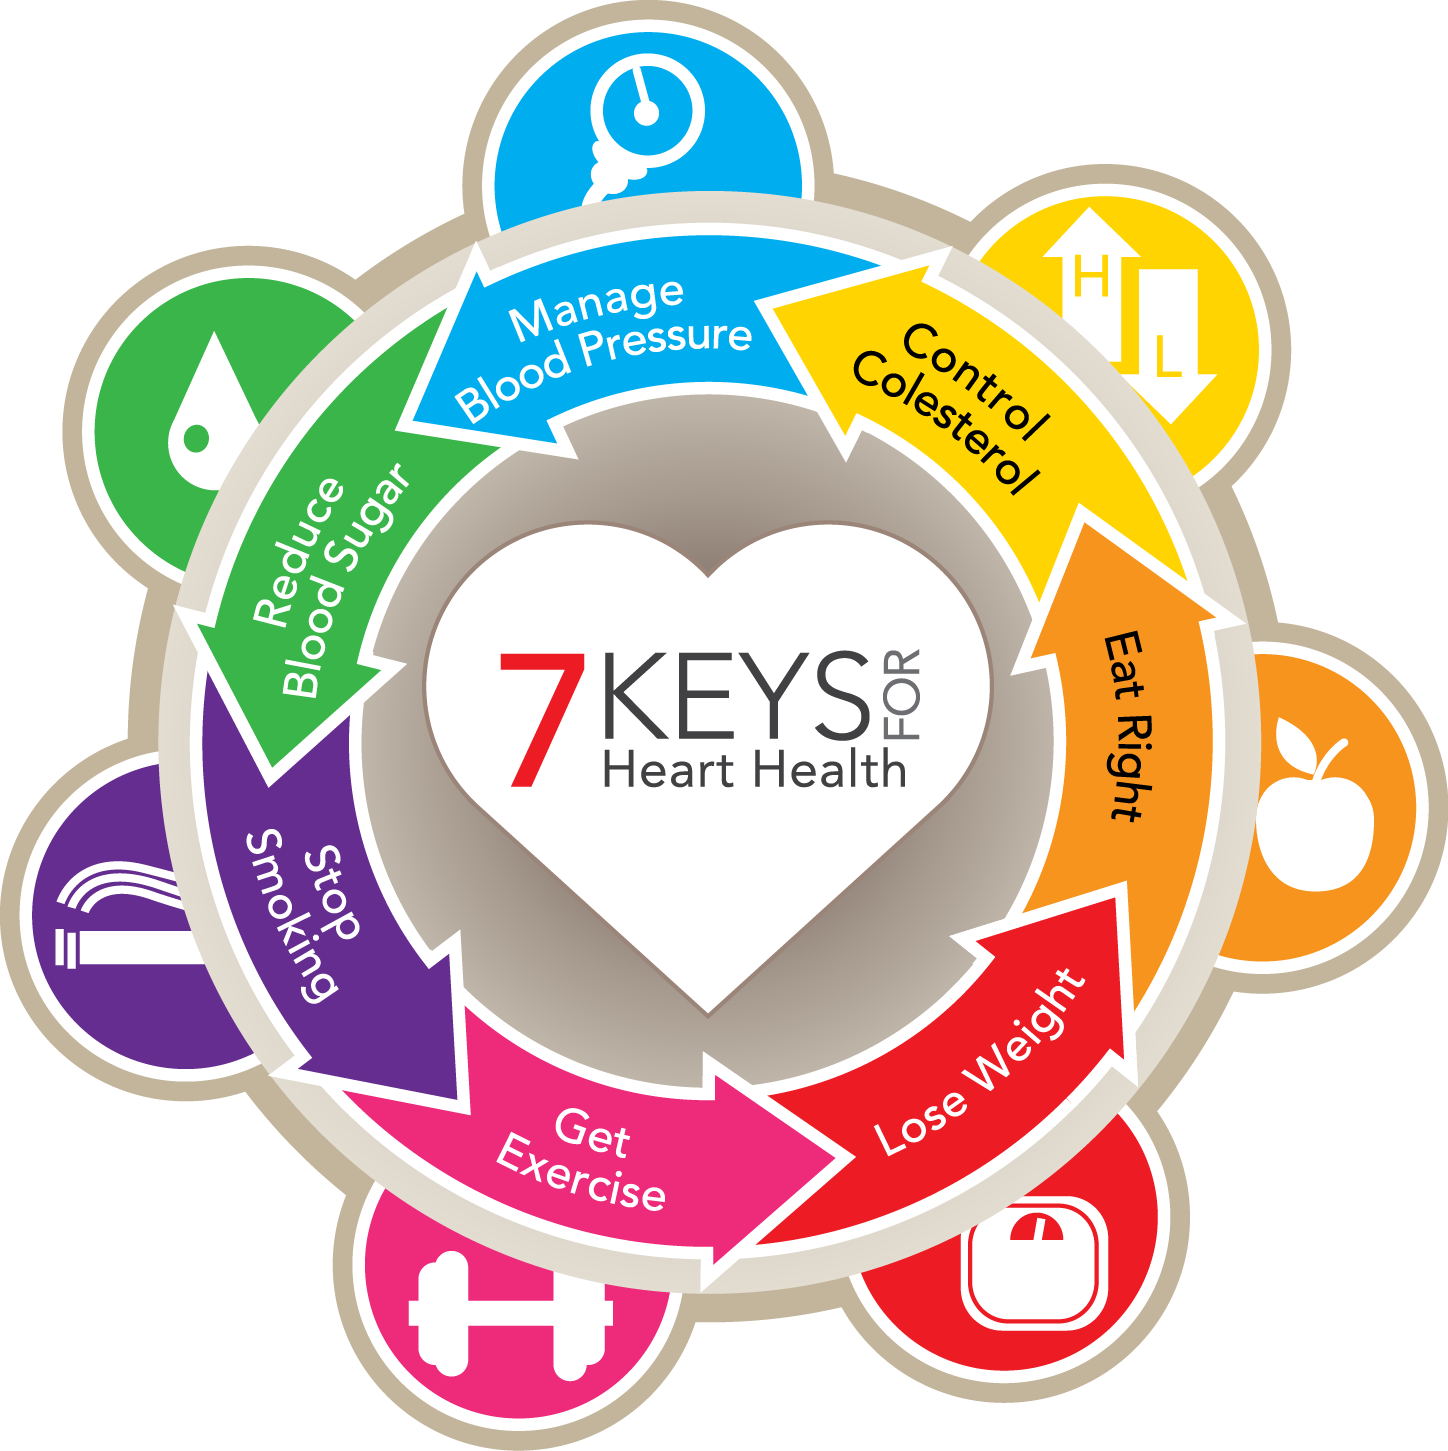 7 Keys for Heart Health infographic